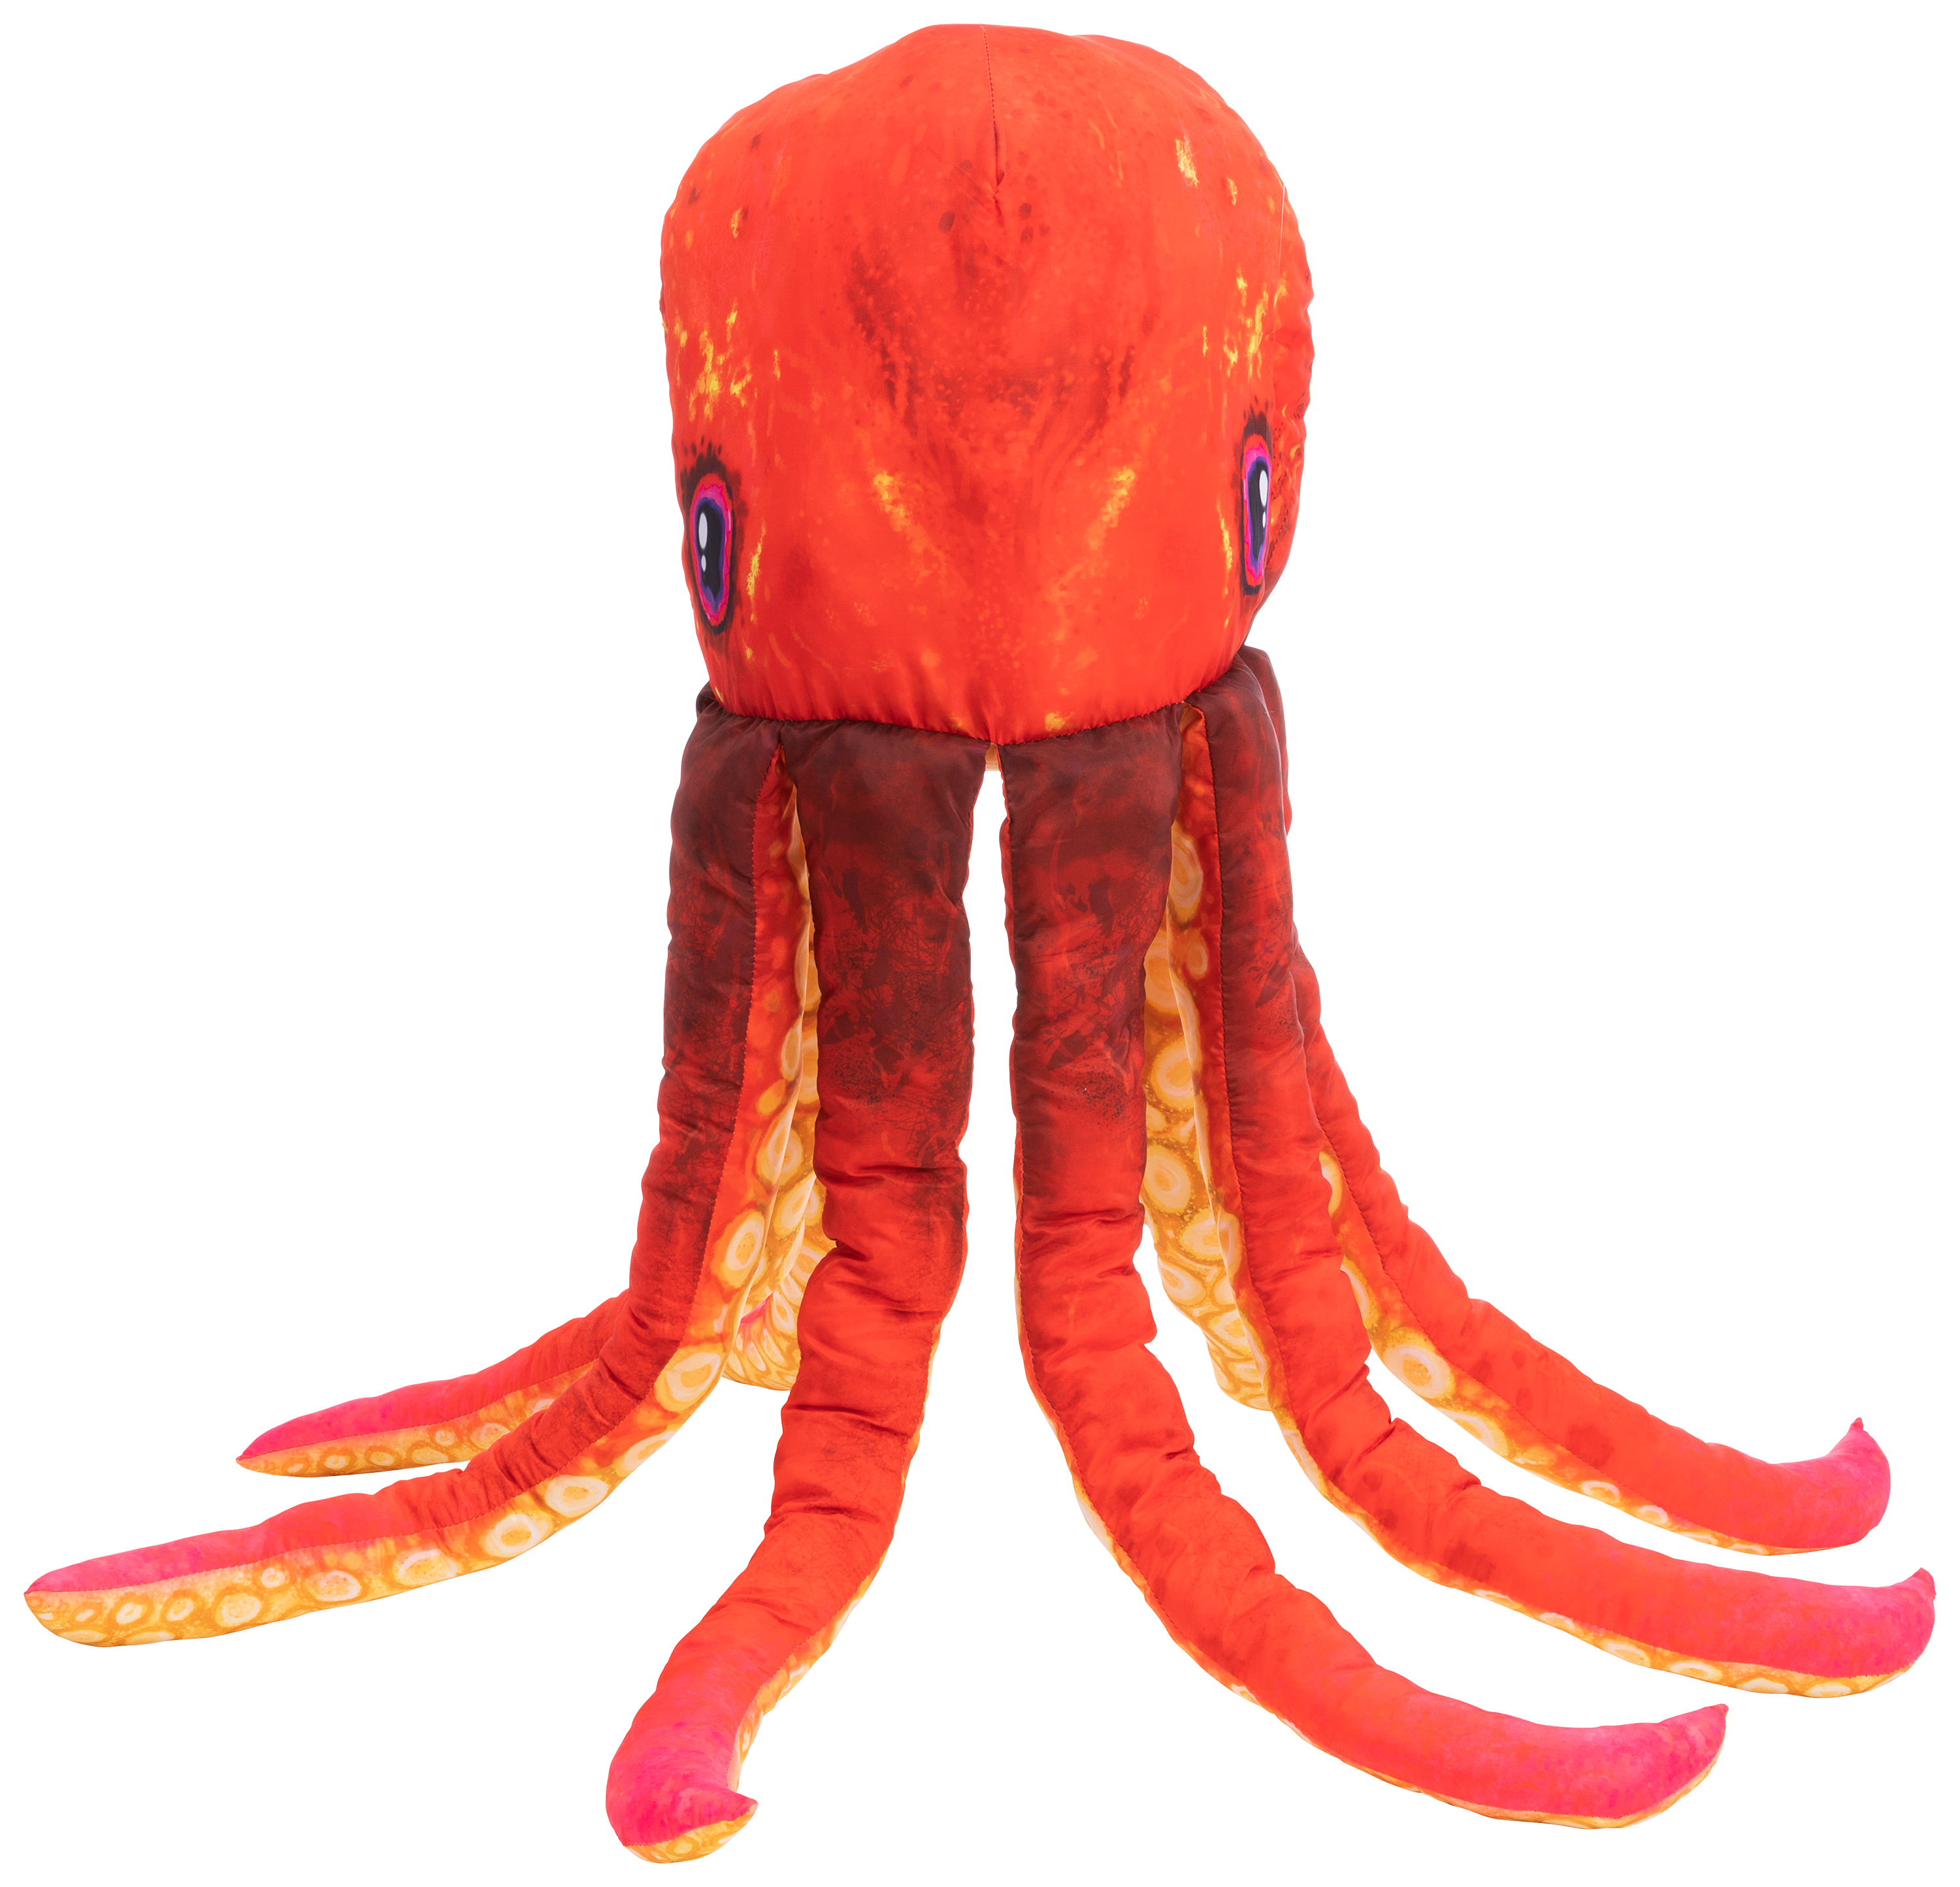 giant octopus stuffed animal